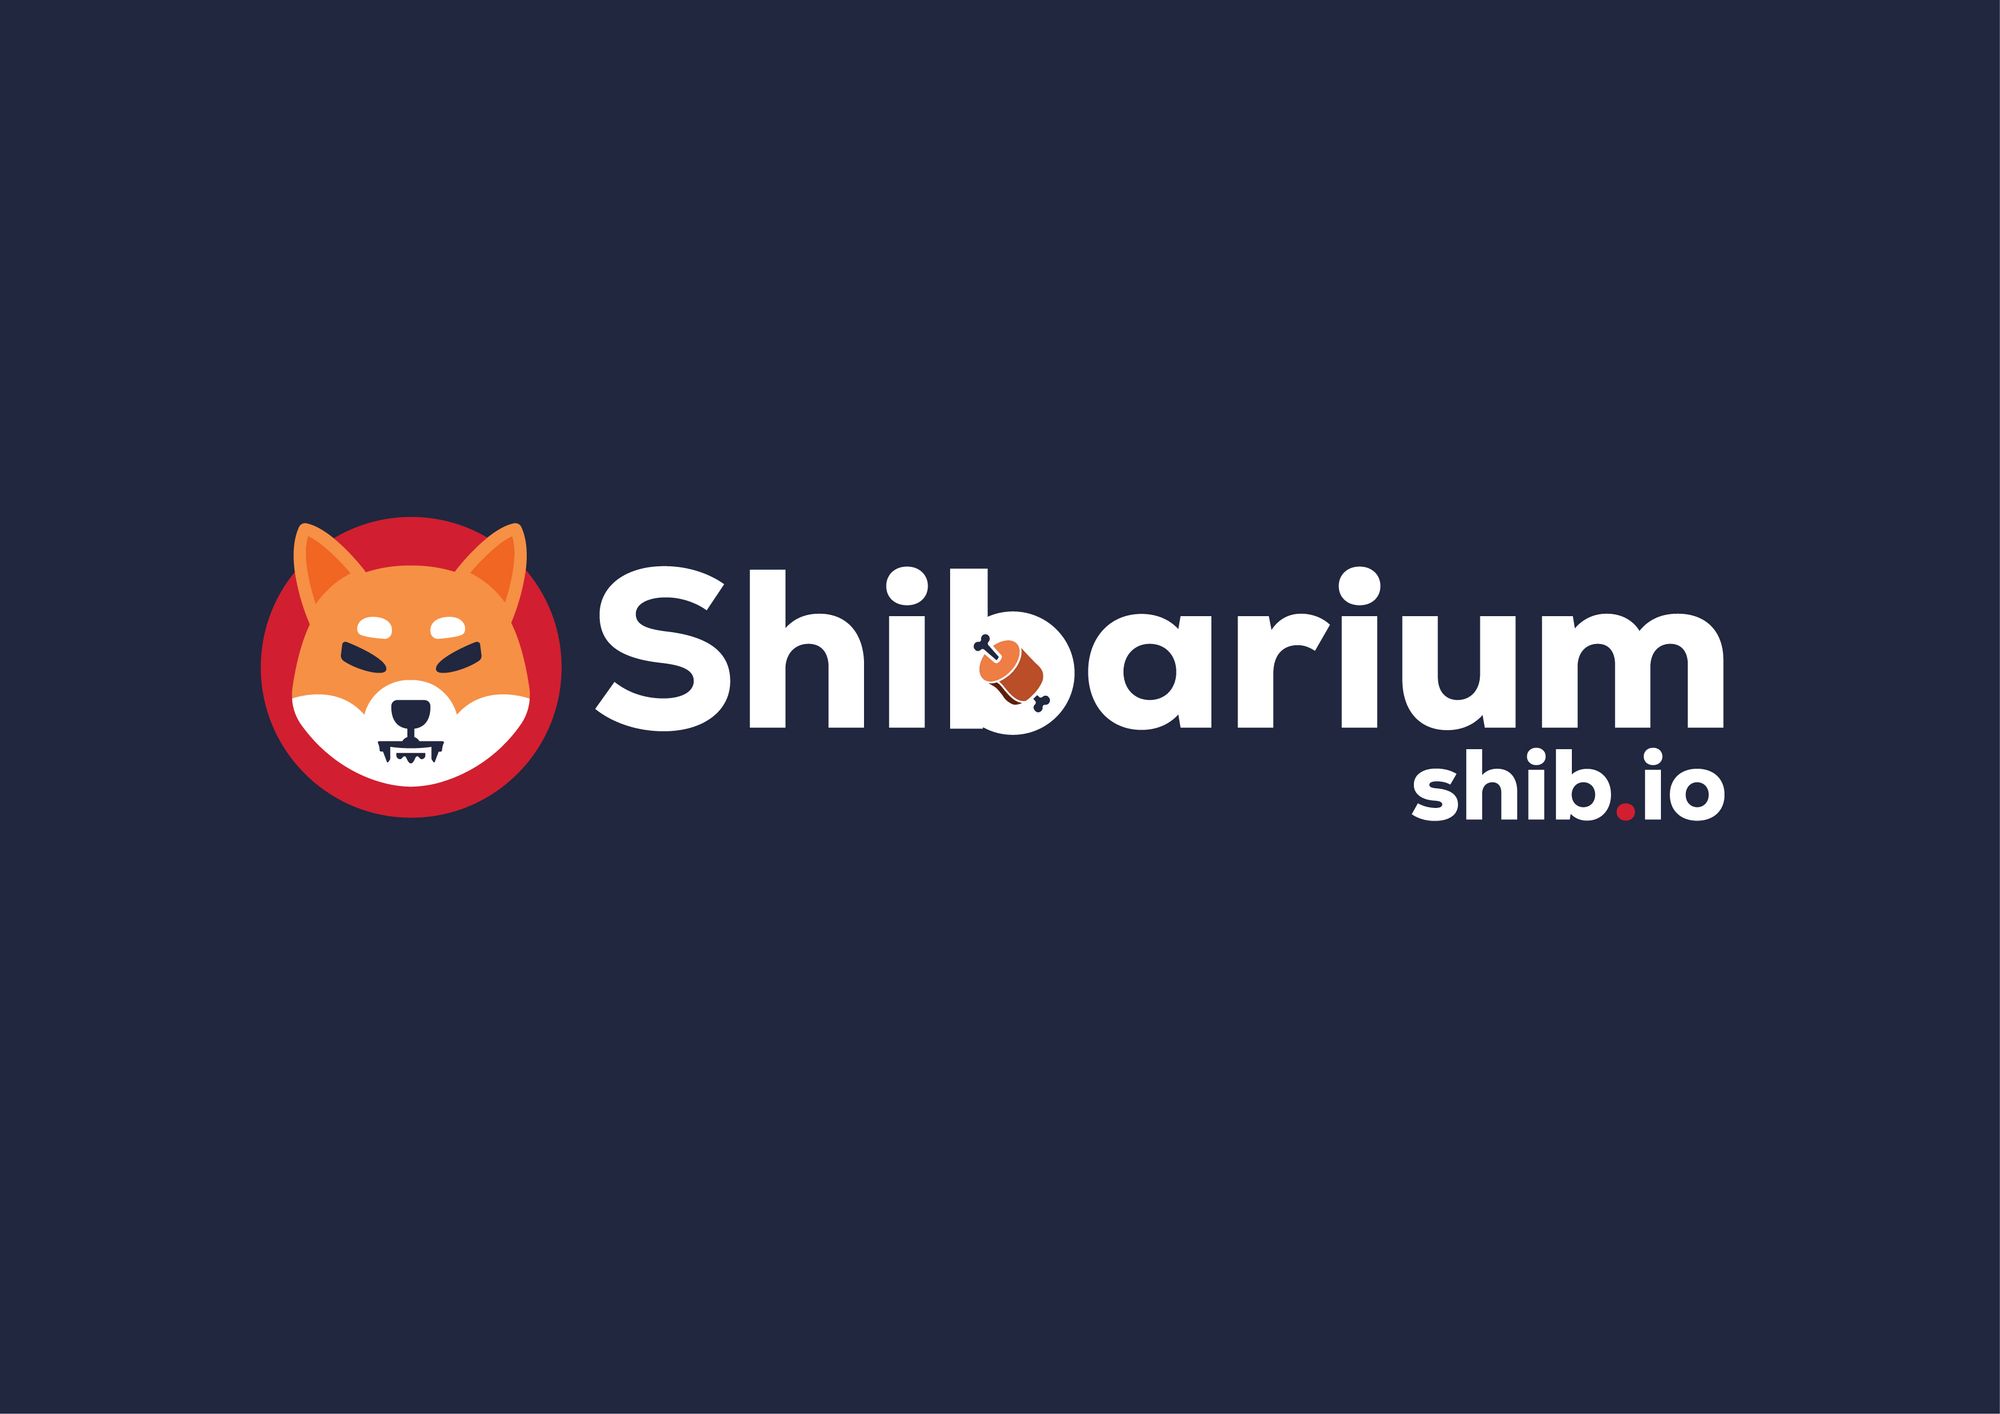 KNOCHEN: Der Pass zum Shibarium